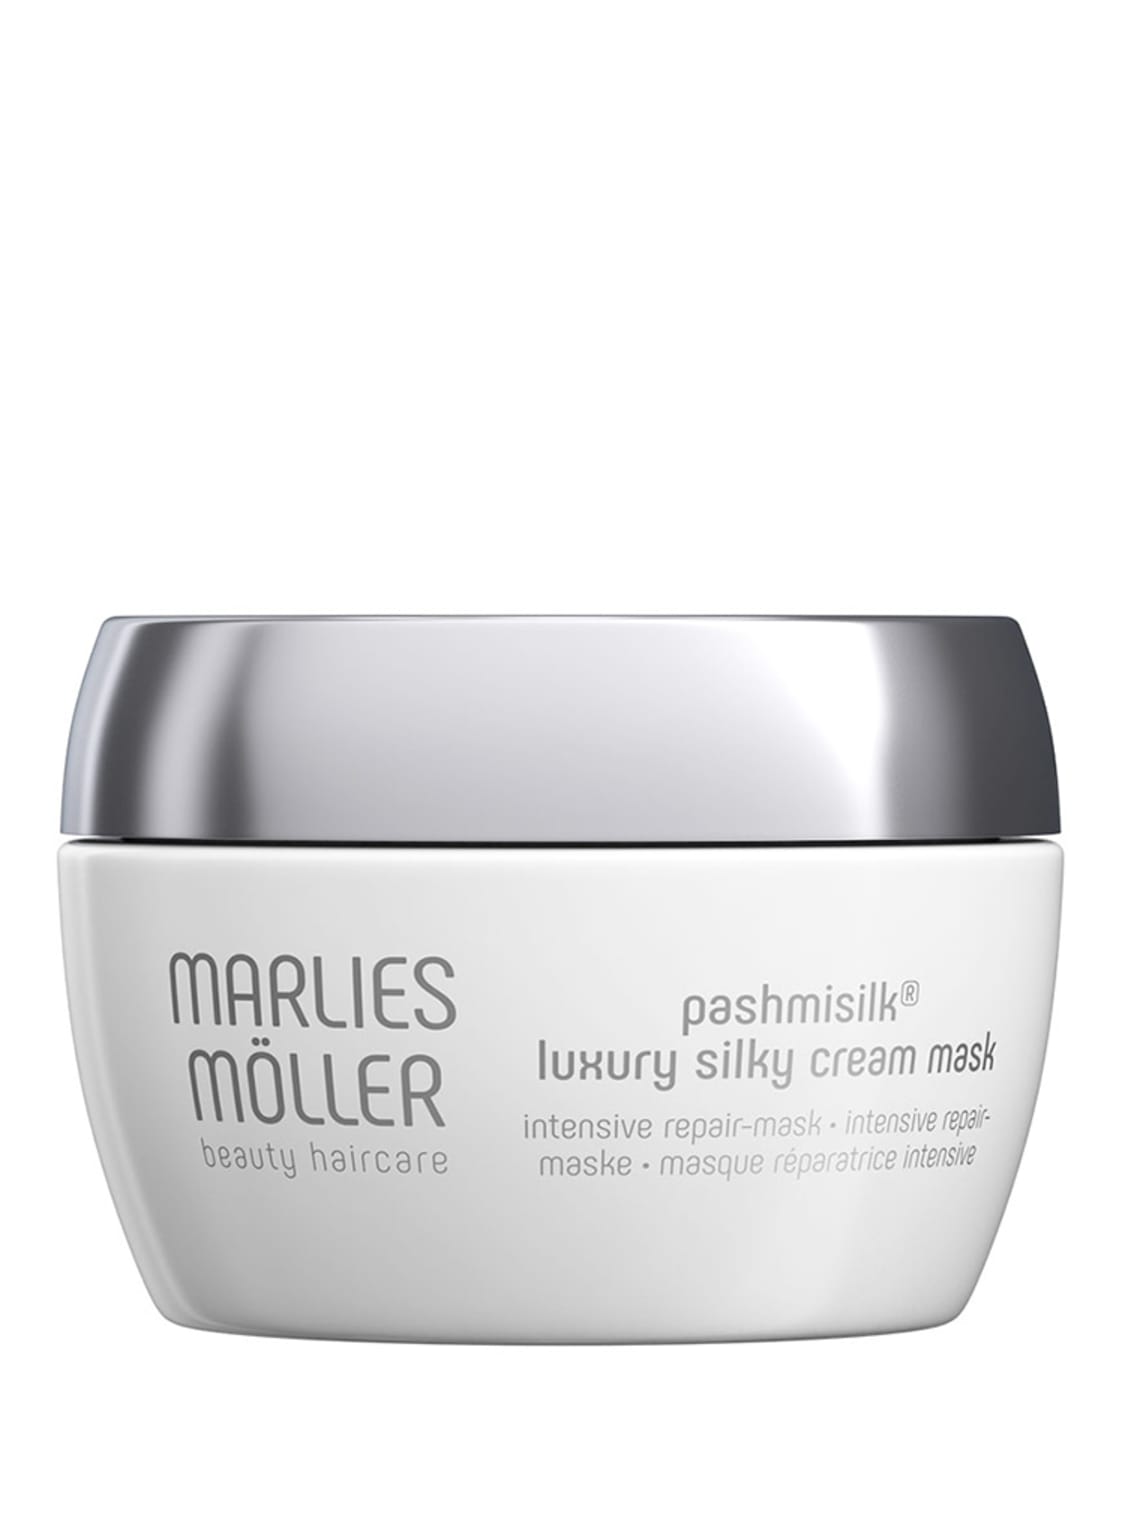 Marlies Möller Pashmisilk®️ Luxury Silky Cream Mask 120 ml von MARLIES MÖLLER